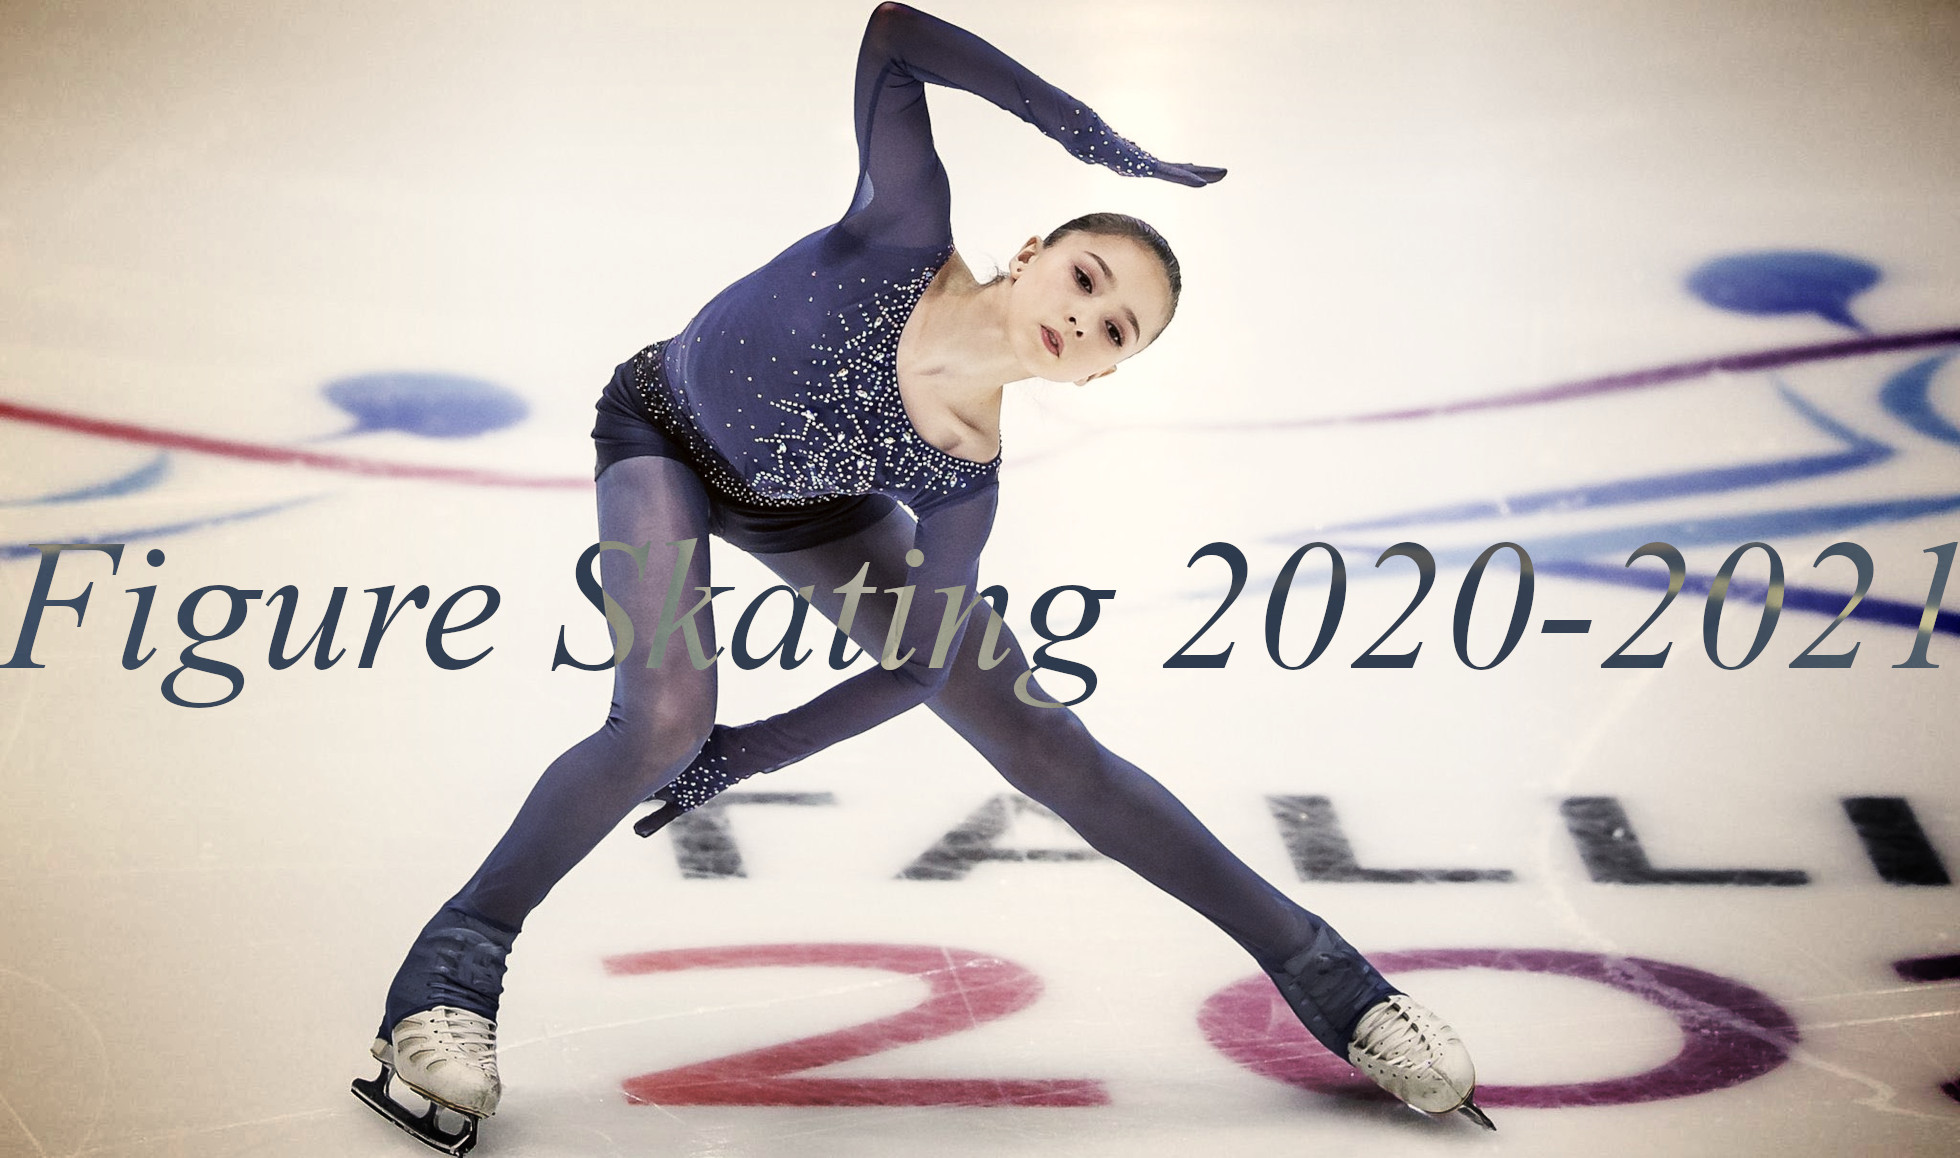 Figure Skating 2020-2021 - Kamila Valieva